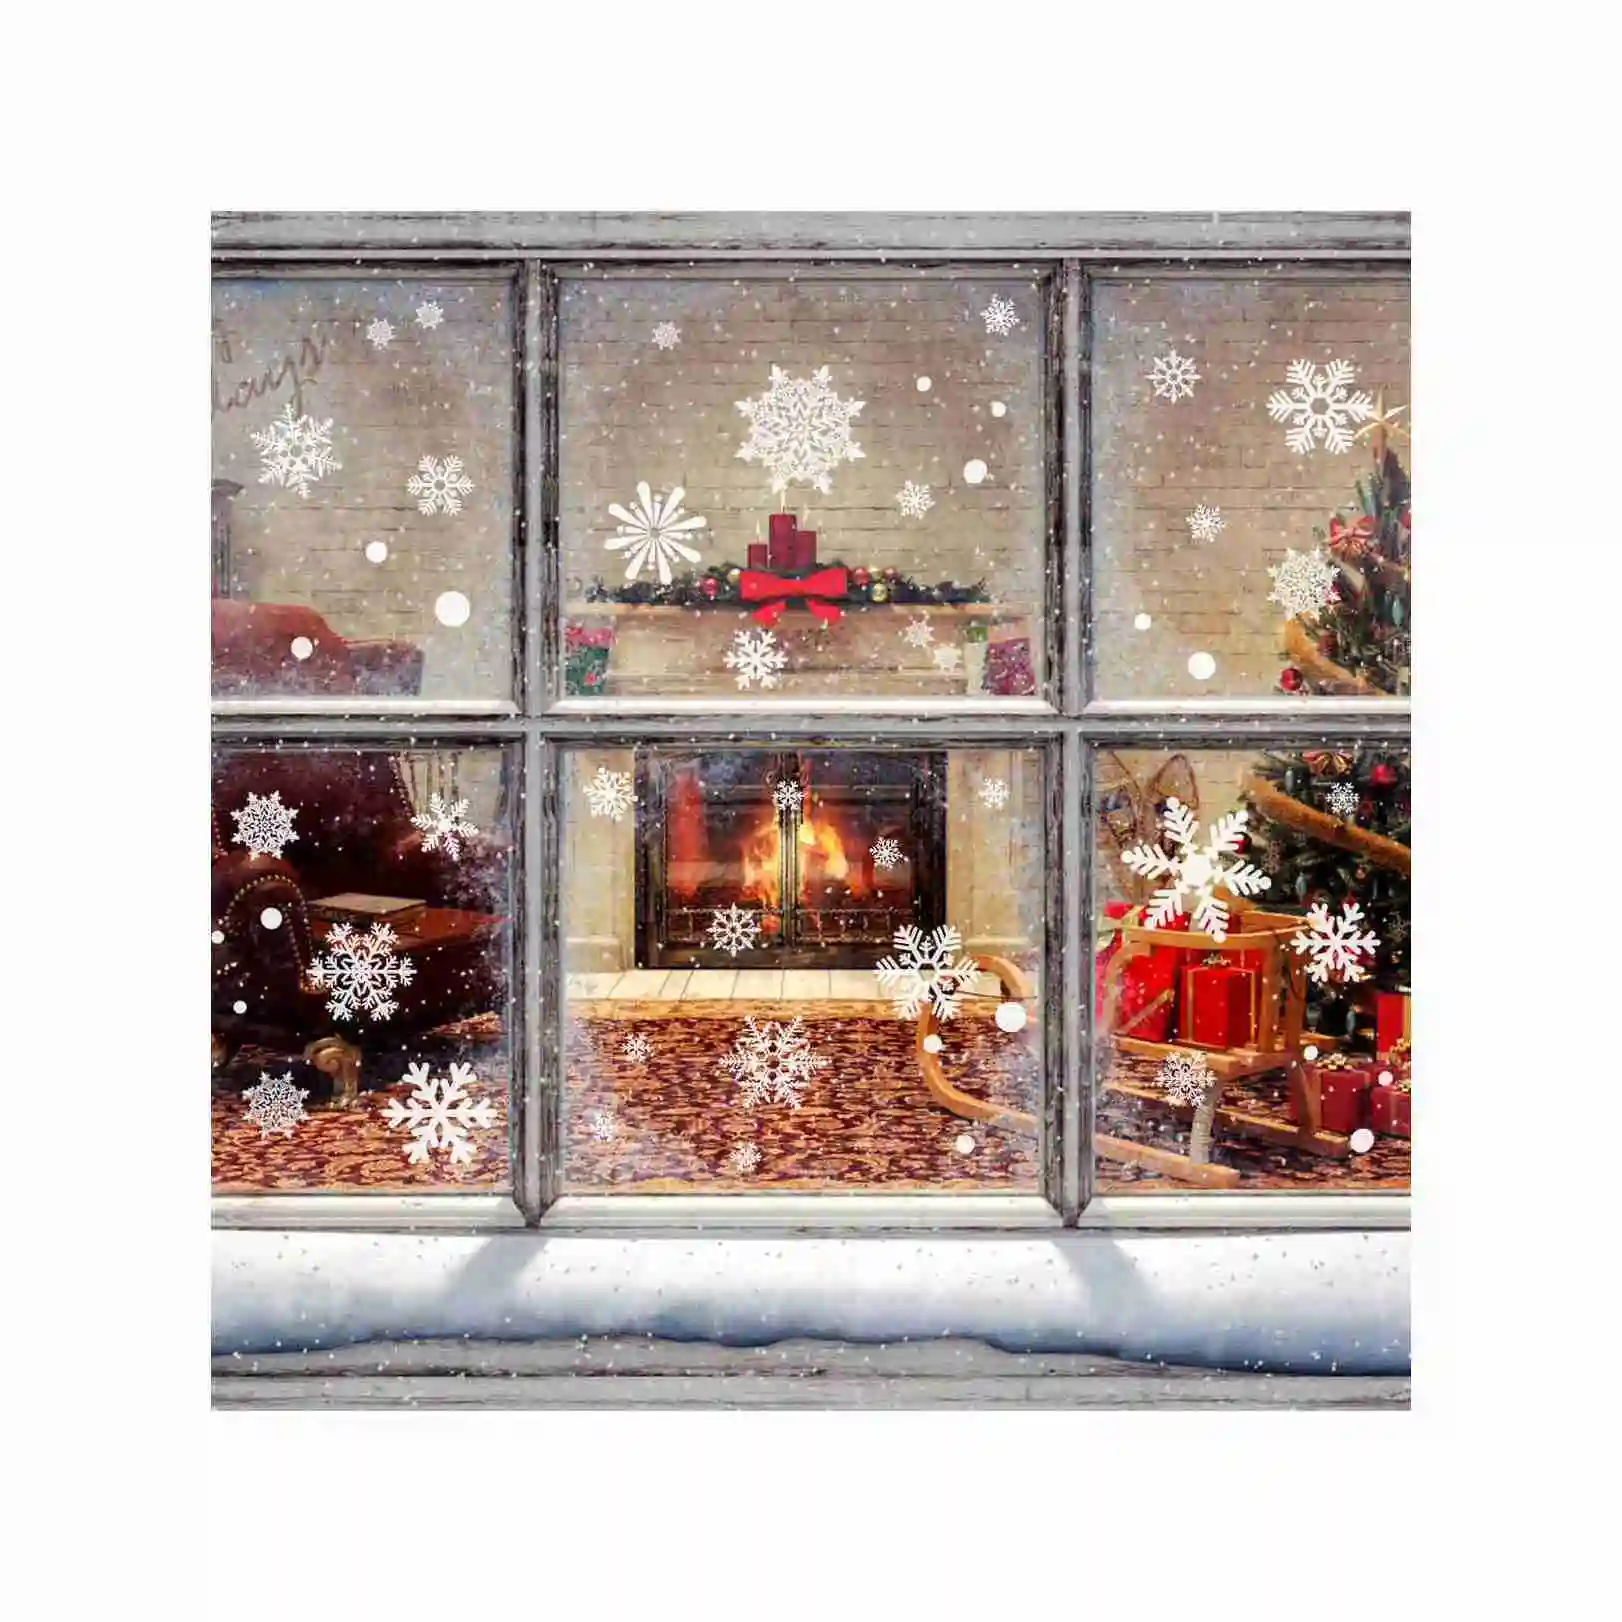 Adesivo per finestra più venduto vendita adesivi natalizi adesivo per finestra in vetro con decalcomania della finestra